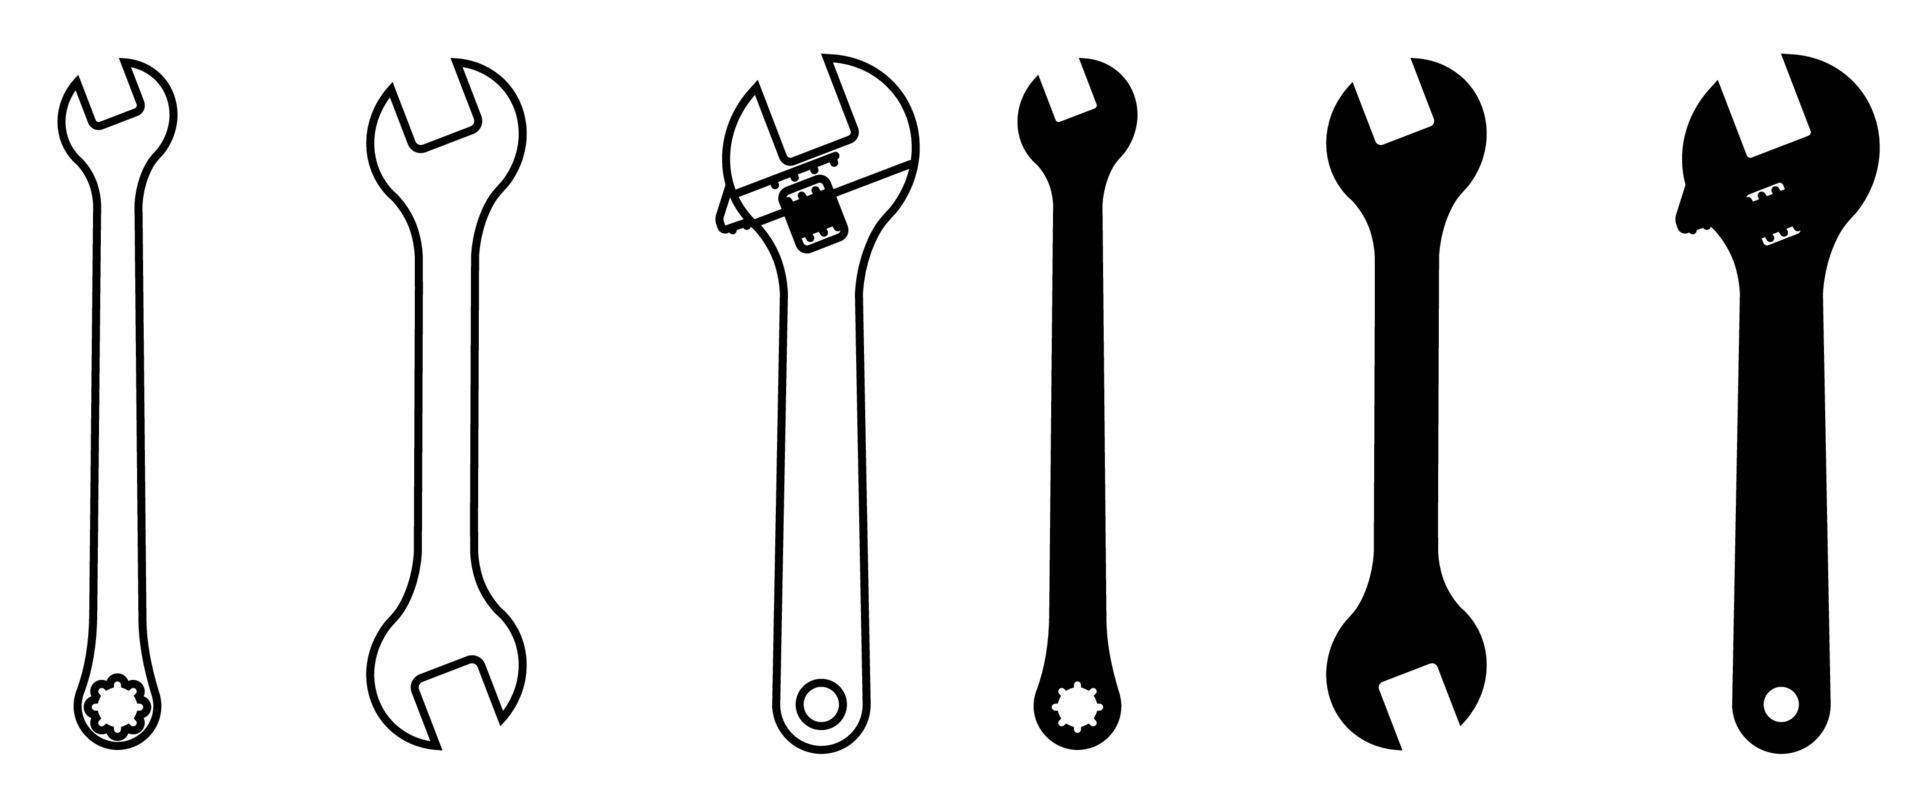 clés pour la réparation de formes diverses. ensemble d'icônes en noir et blanc vecteur